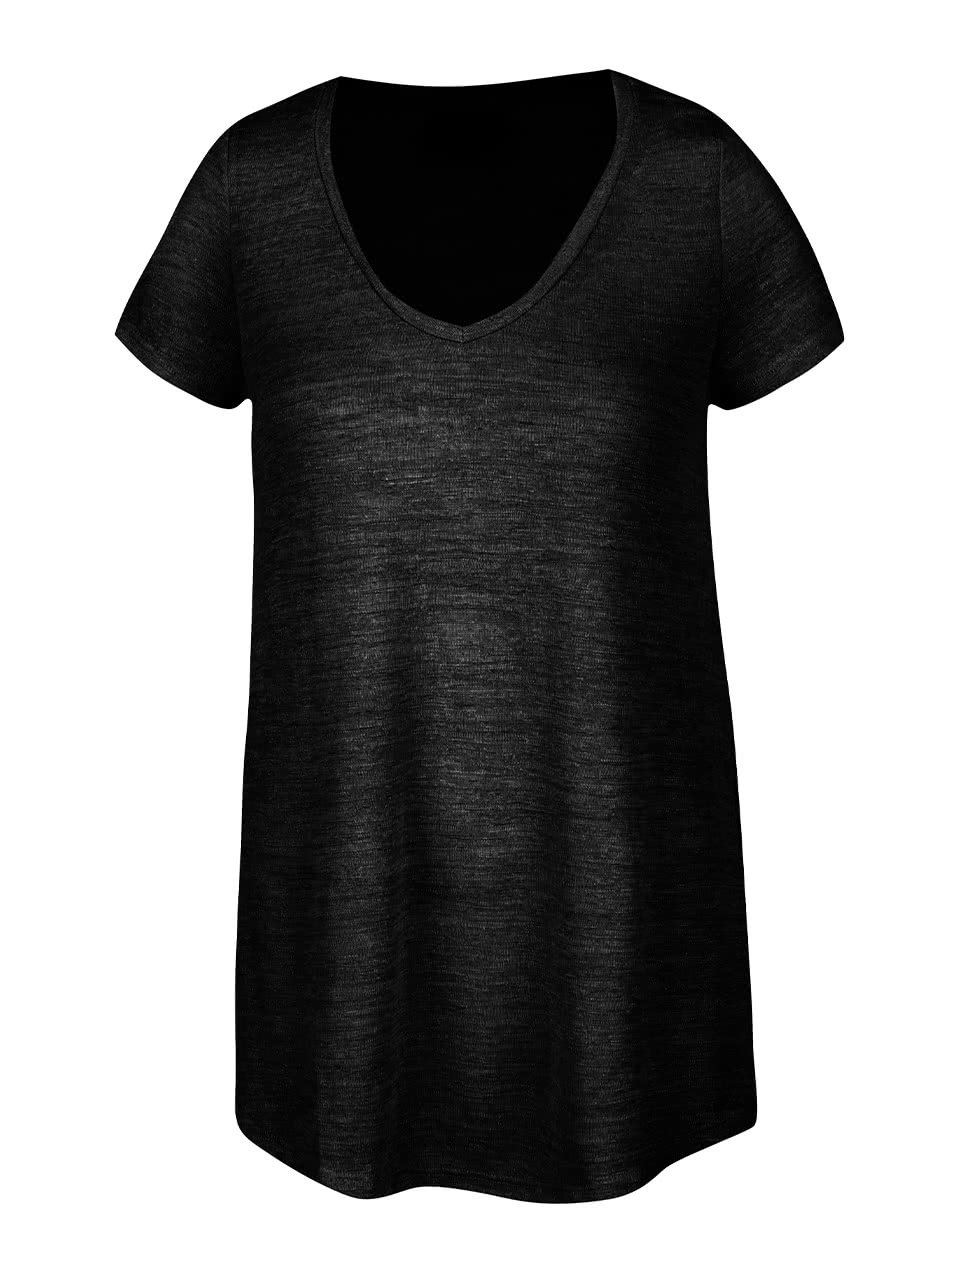 Černé průsvitné tričko Vero Moda Cody